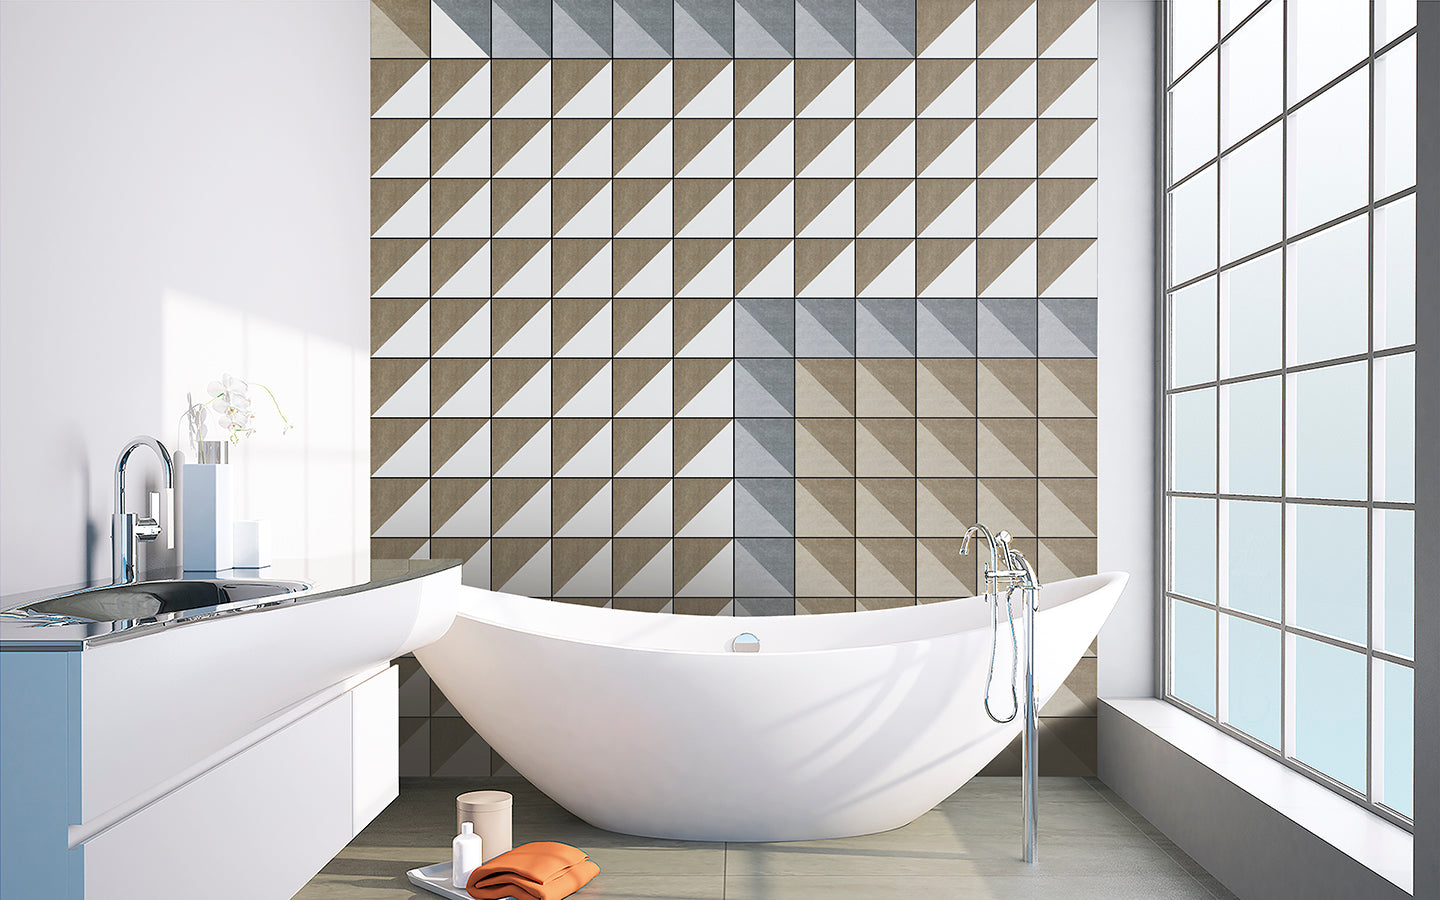 Bergen Wall Tile 20x20 | Beige Design 03 Matt